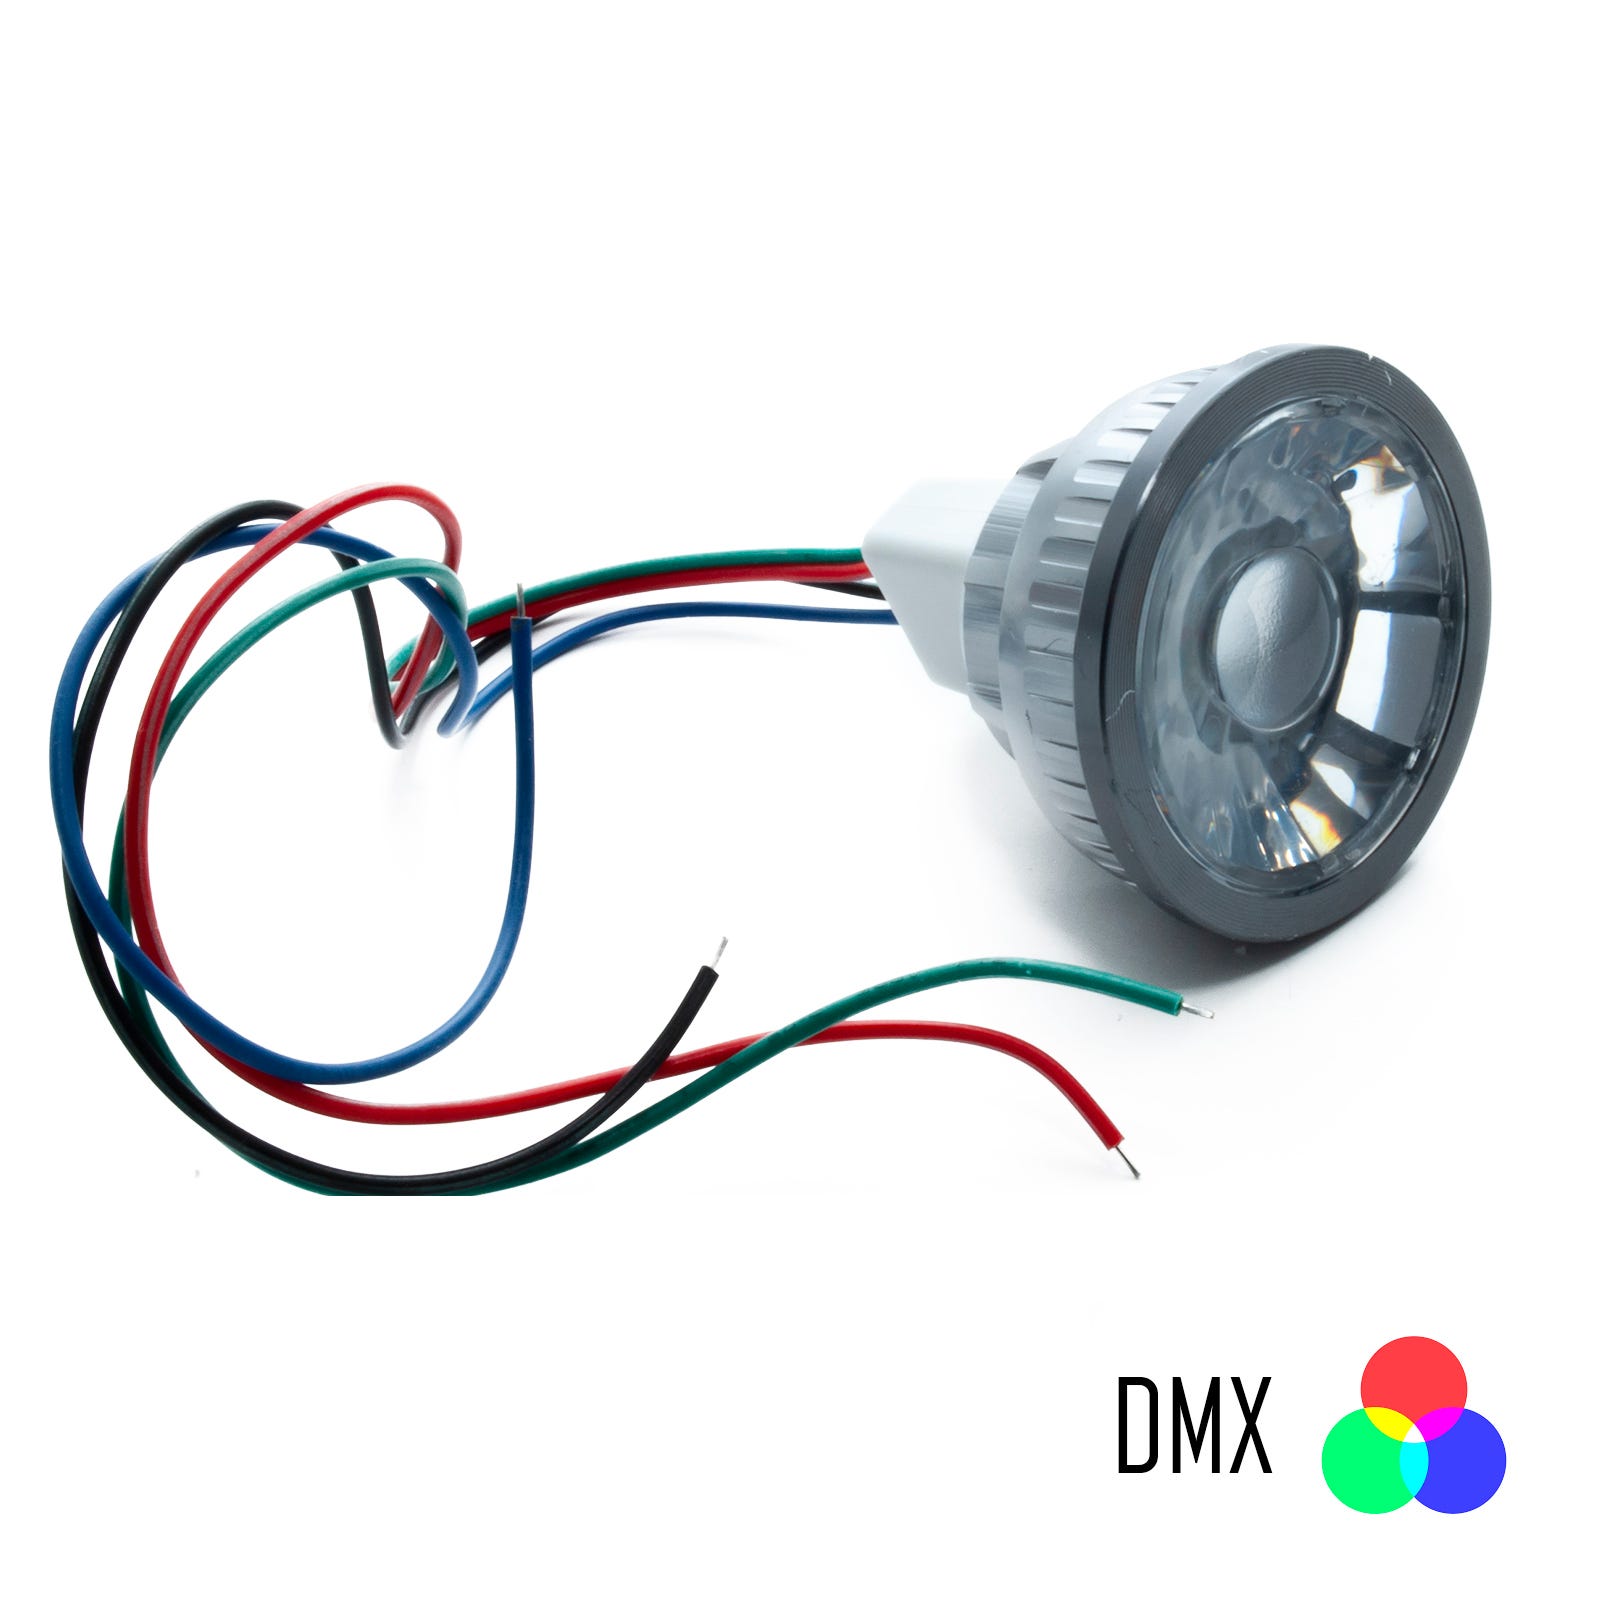 Lampe spot à Led RGB synchronisable DMX 4 fils 12v jeux de lumière